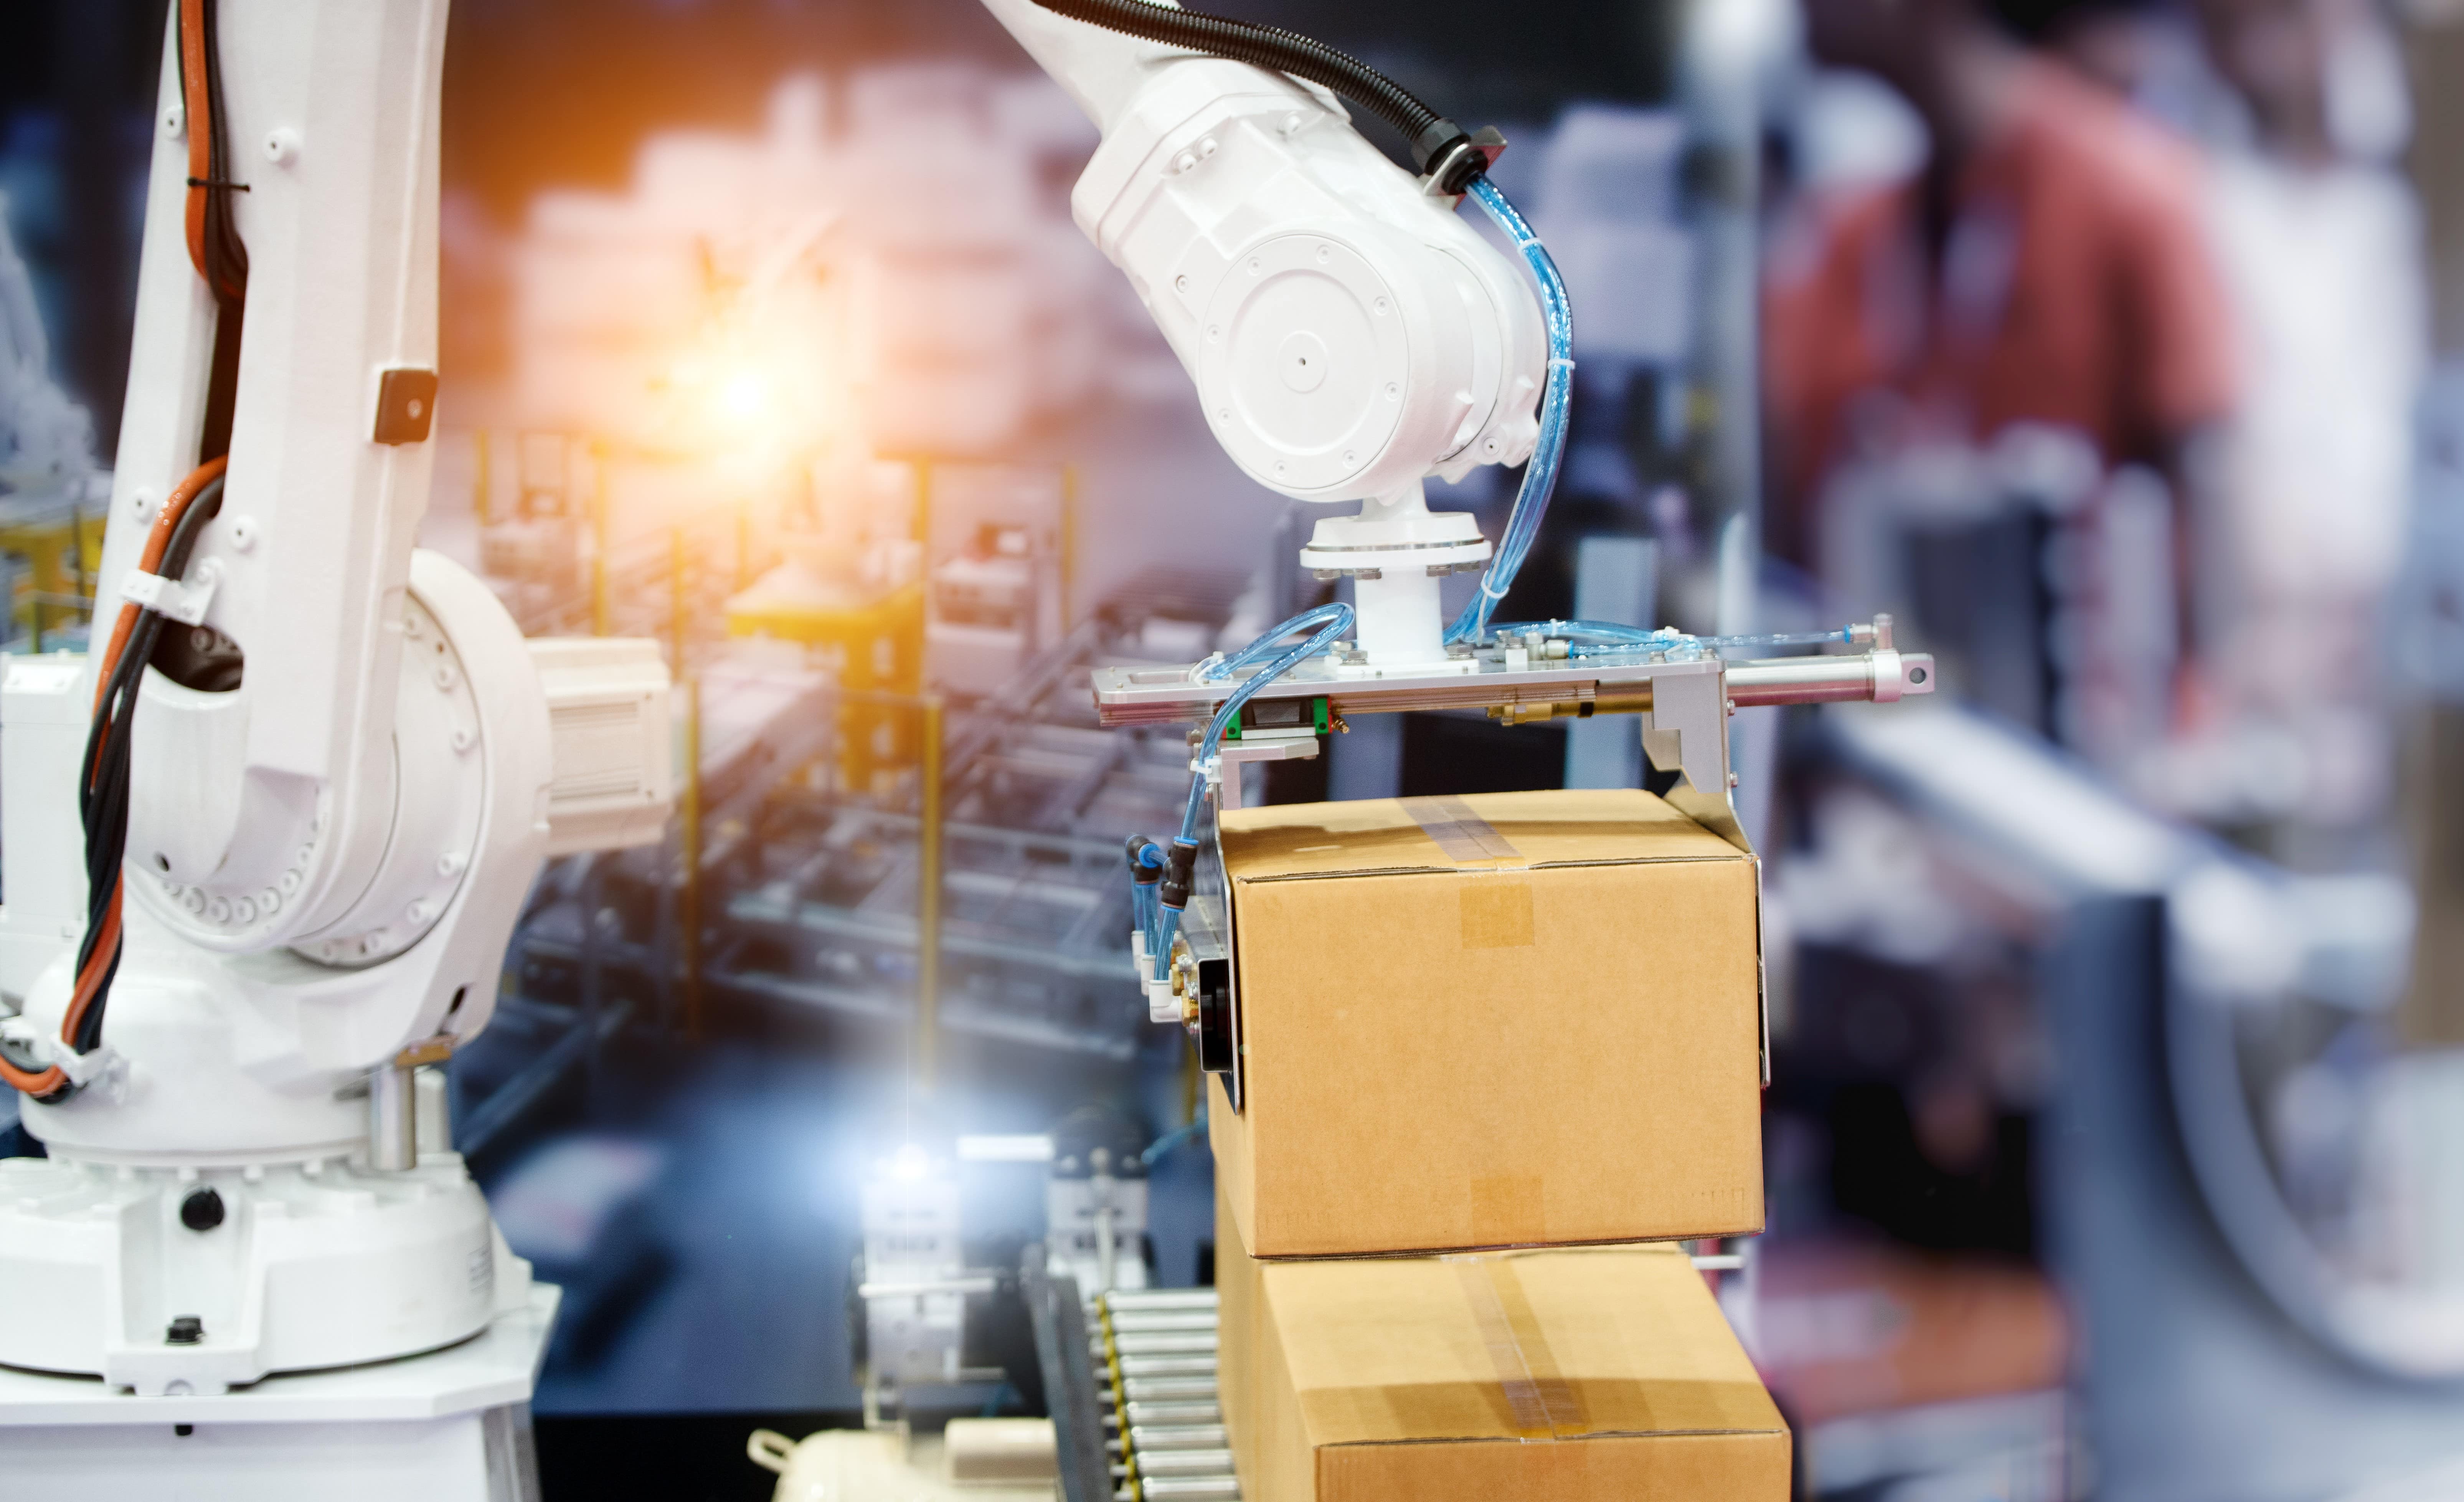 Ein Robotorarm hält eine Verpackungsbox, vor dem Hintergrund einer Fabrikhalle